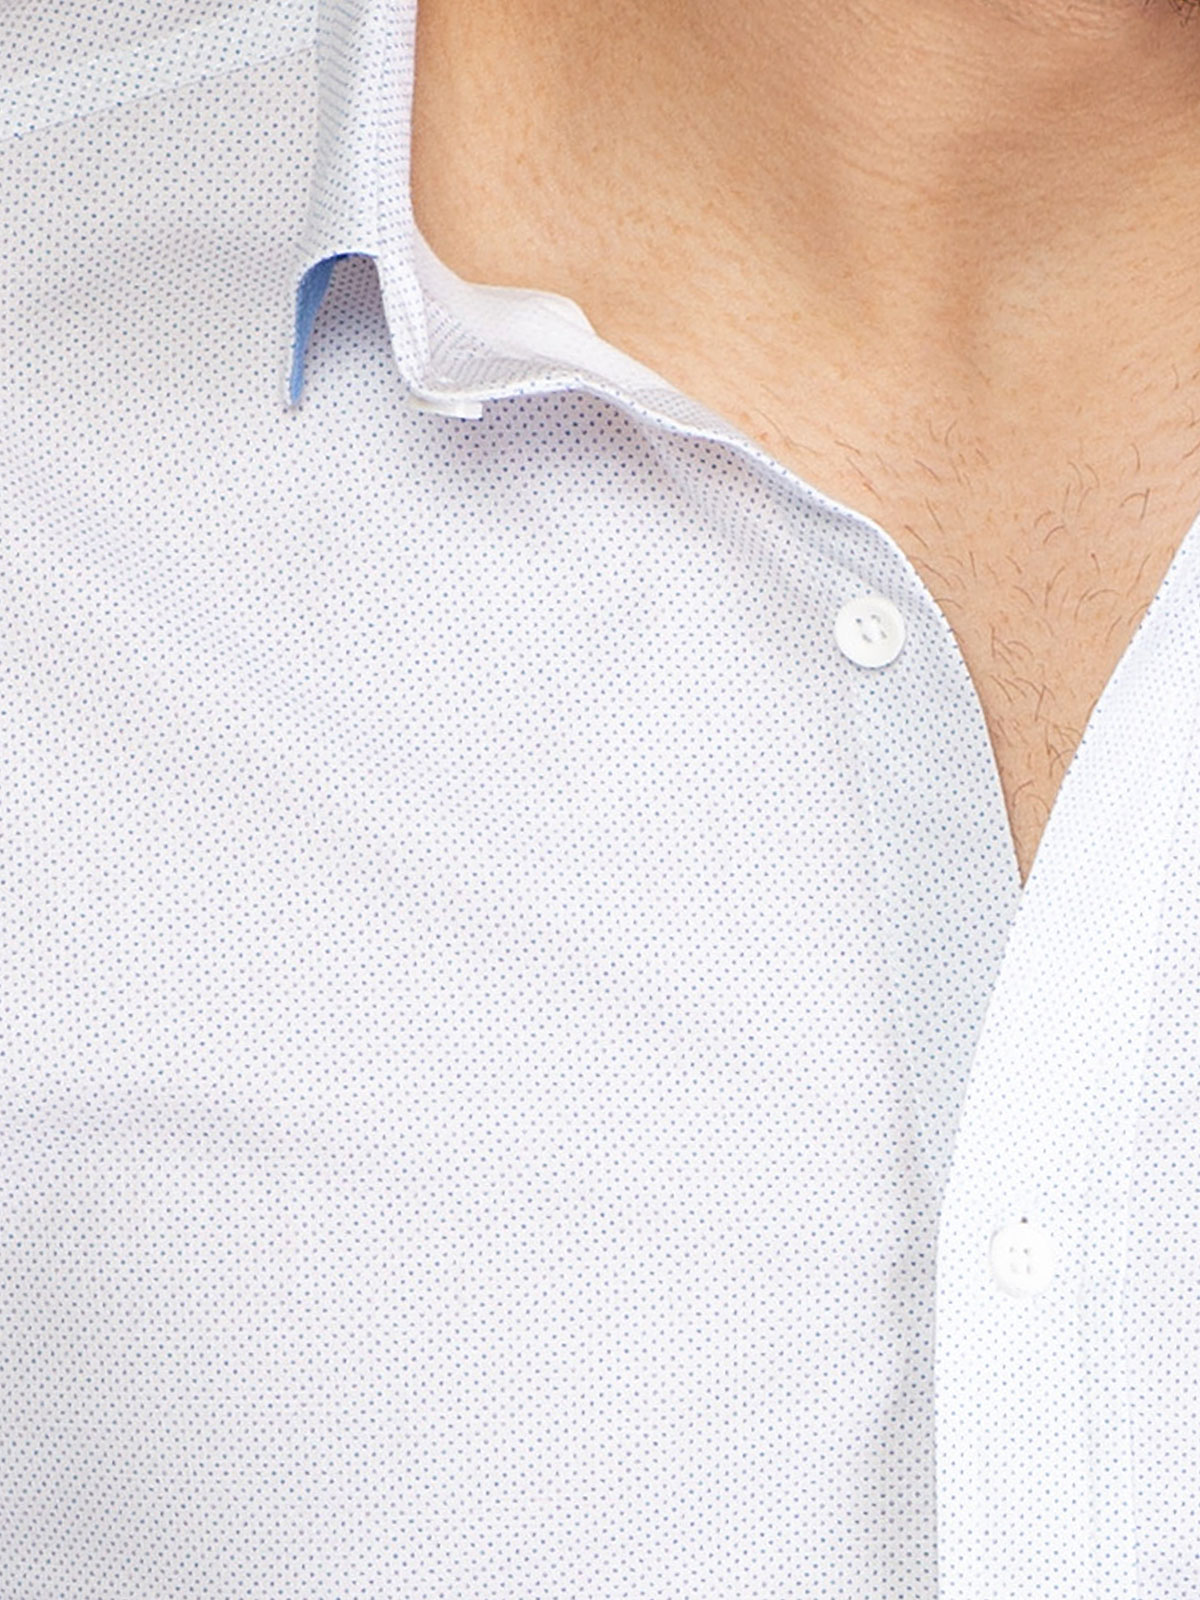 Λευκό πουκάμισο με μικρές γαλάζιες κουκ - 21502 € 40.49 img3